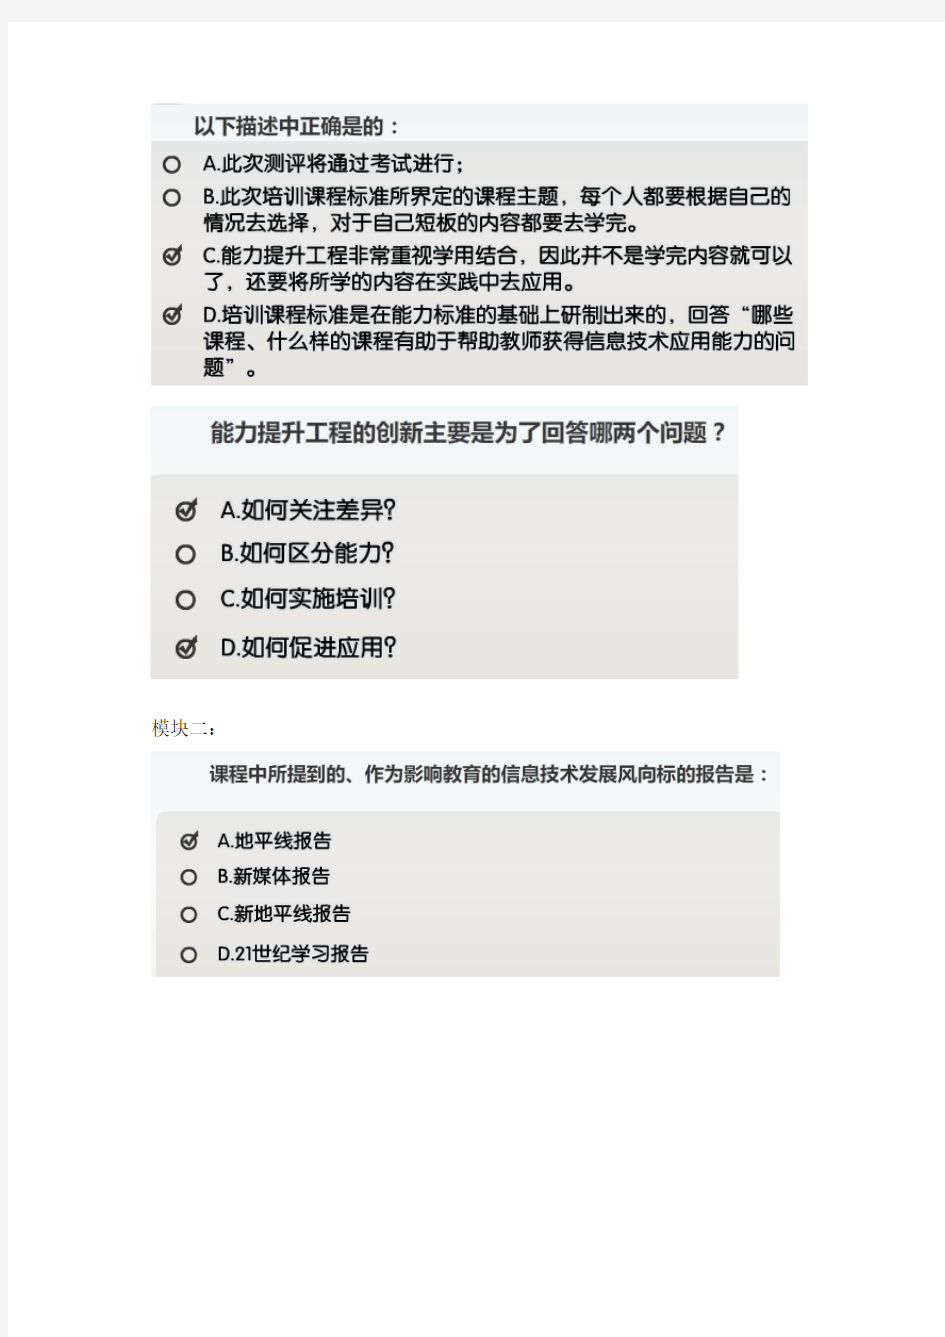 江苏省中小学教师信息技术应用能力提升工程标准解读(五个模块)答案